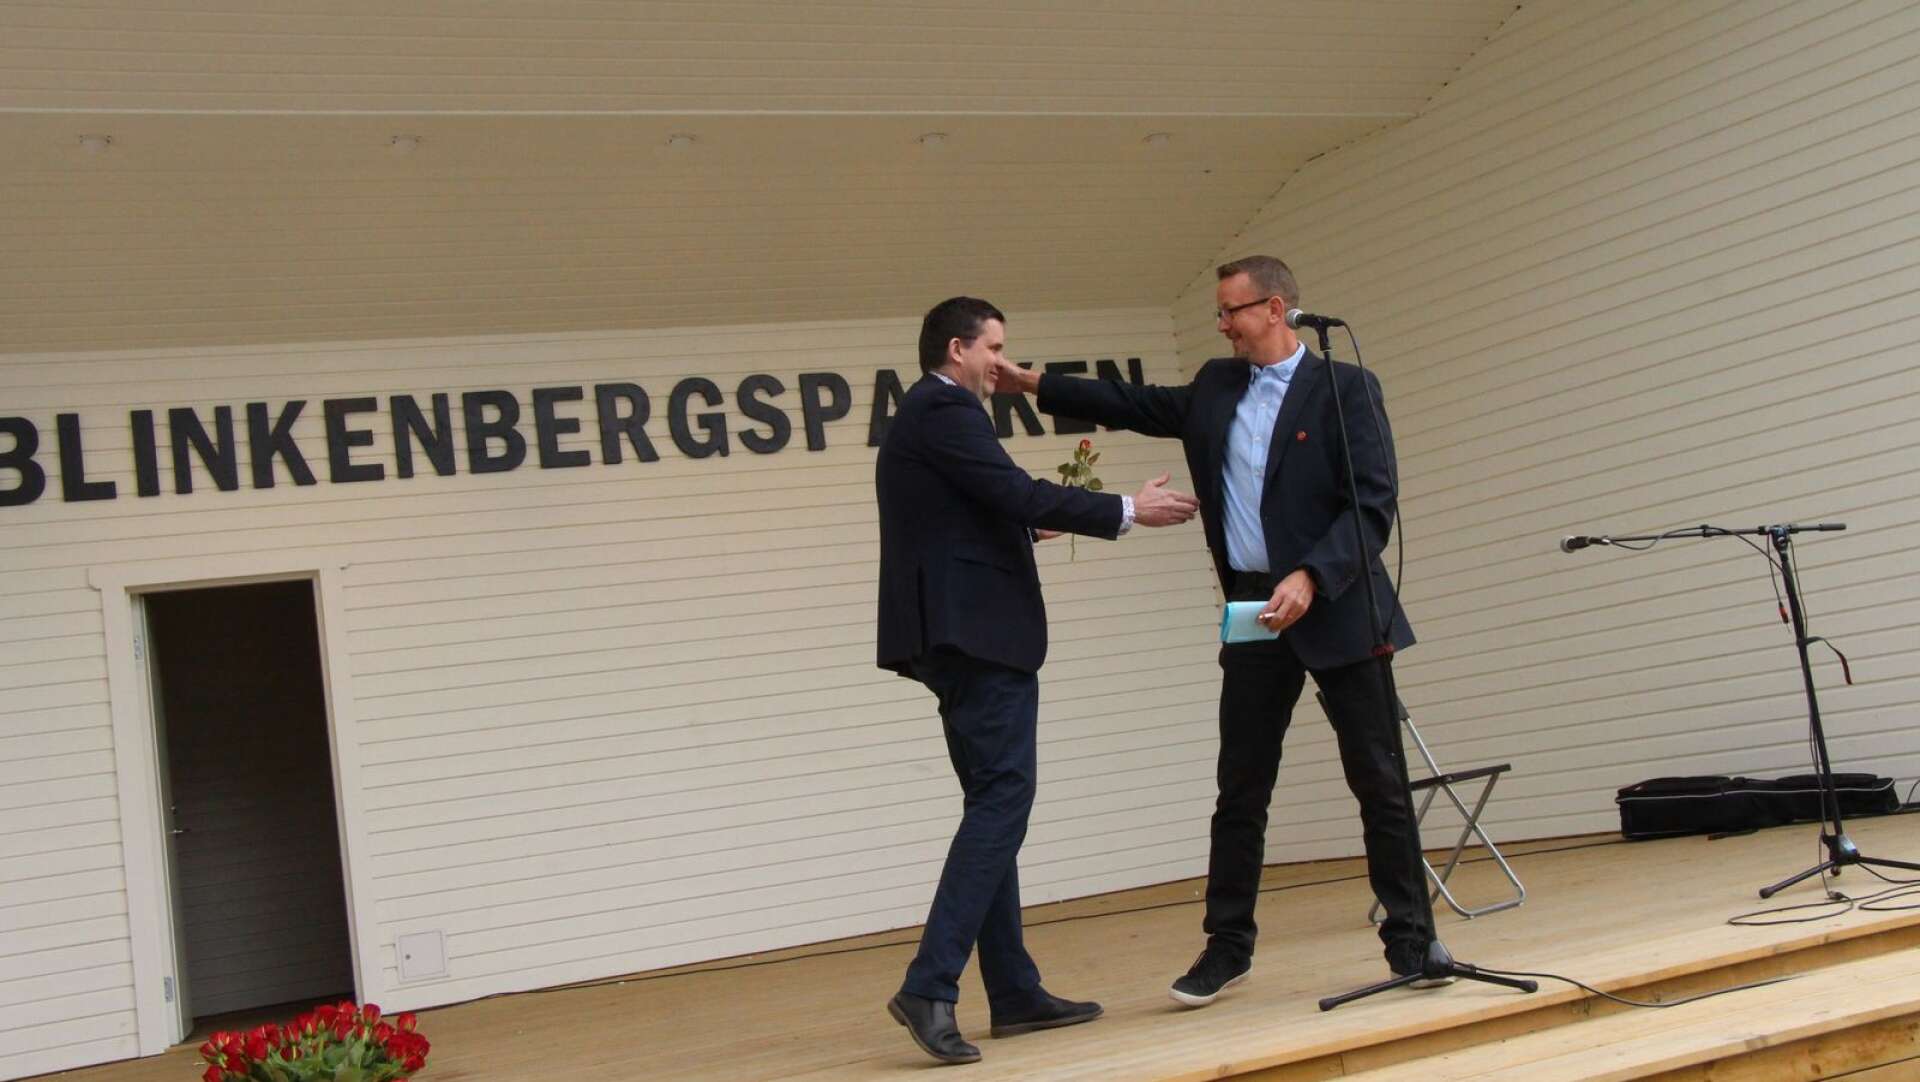 Riksdagsman Mikael Dahlqvist (S) och oppositionsrådet Tomas Pettersson tillsammans på scenen vid första majfirandet i Hagfors.